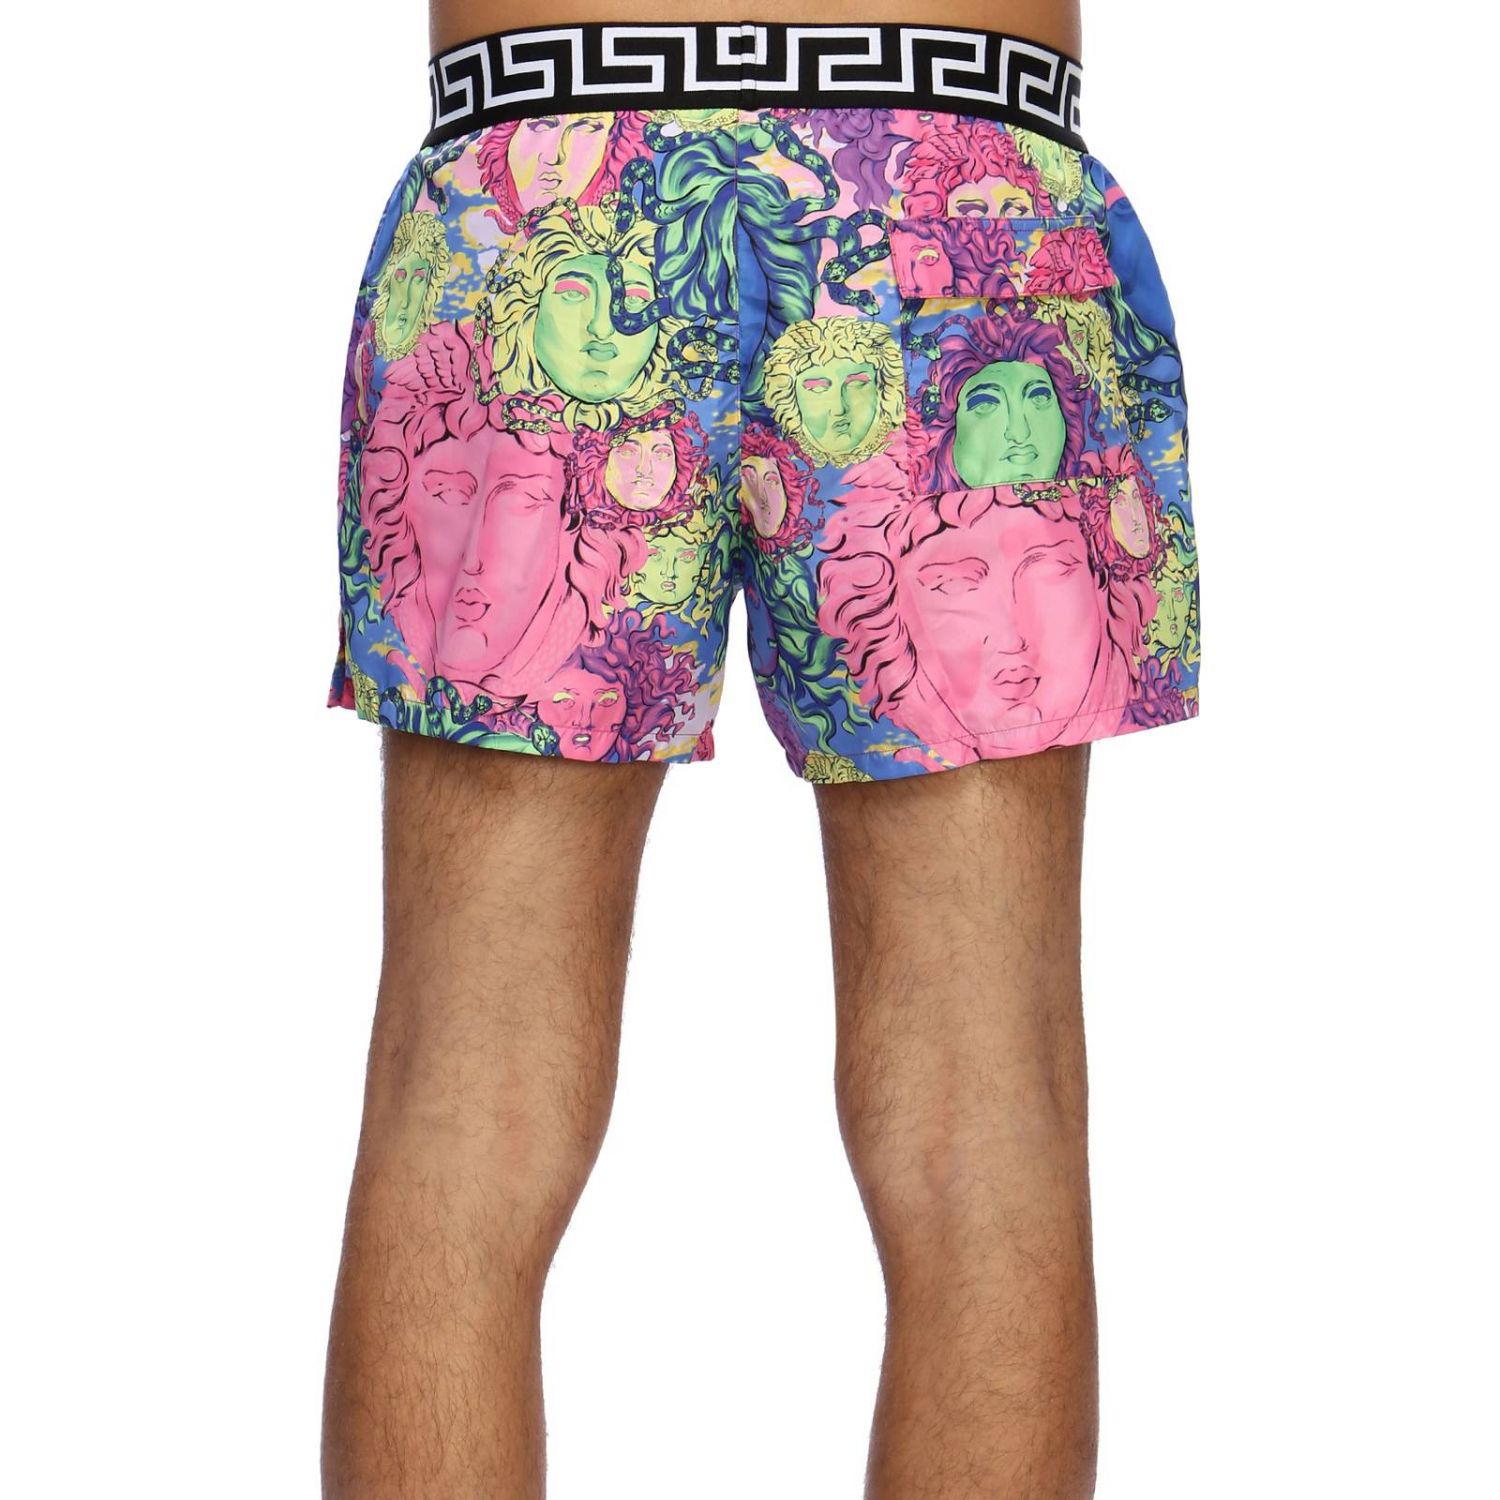 Versace Underwear Outlet: Swimsuit men - Multicolor | Swimsuit Versace ...